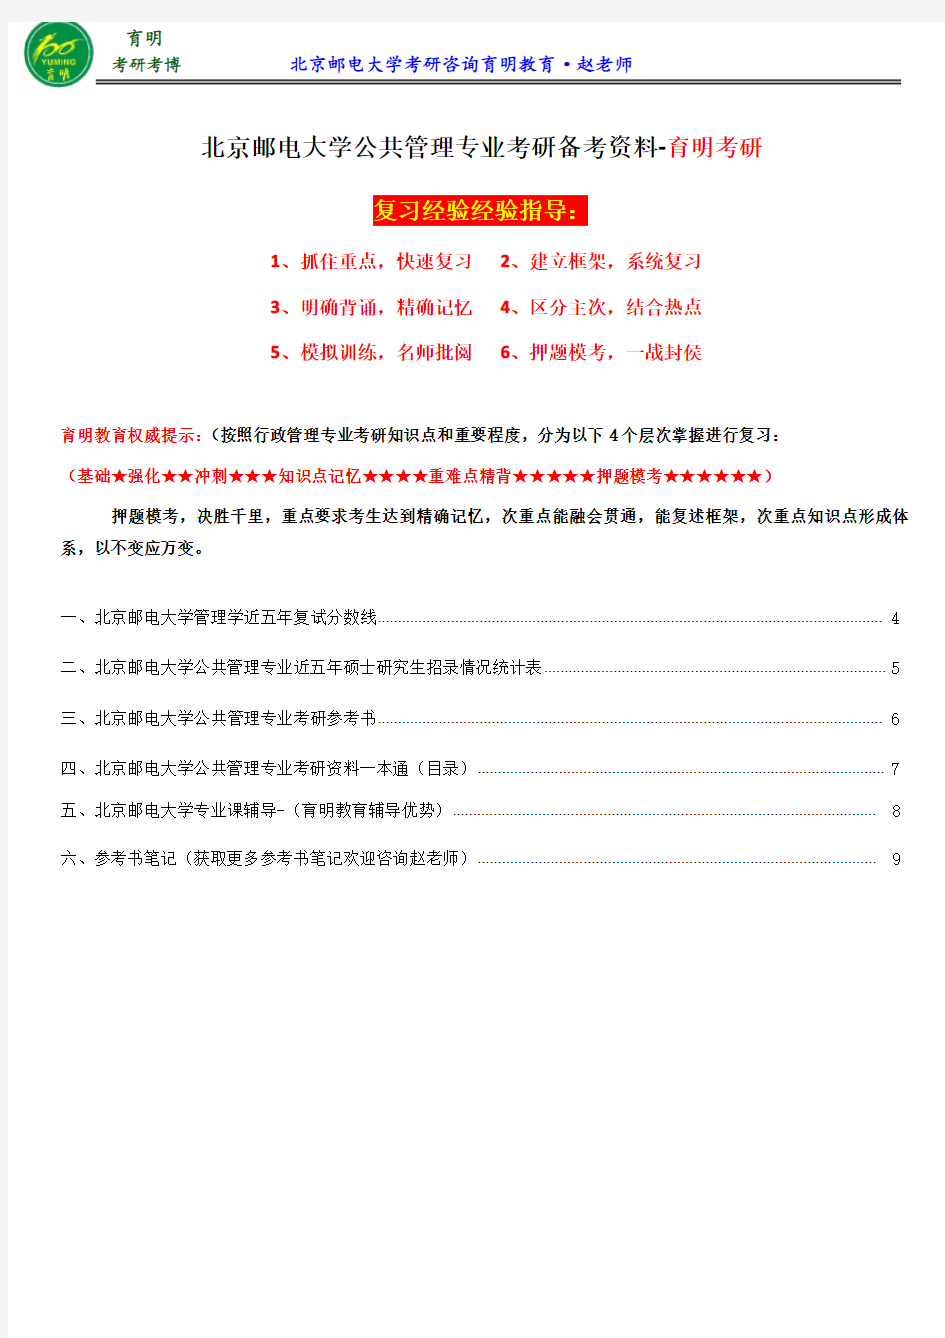 2017北京邮电大学公共管理专业考研参考书、考研分数线、历年分数线